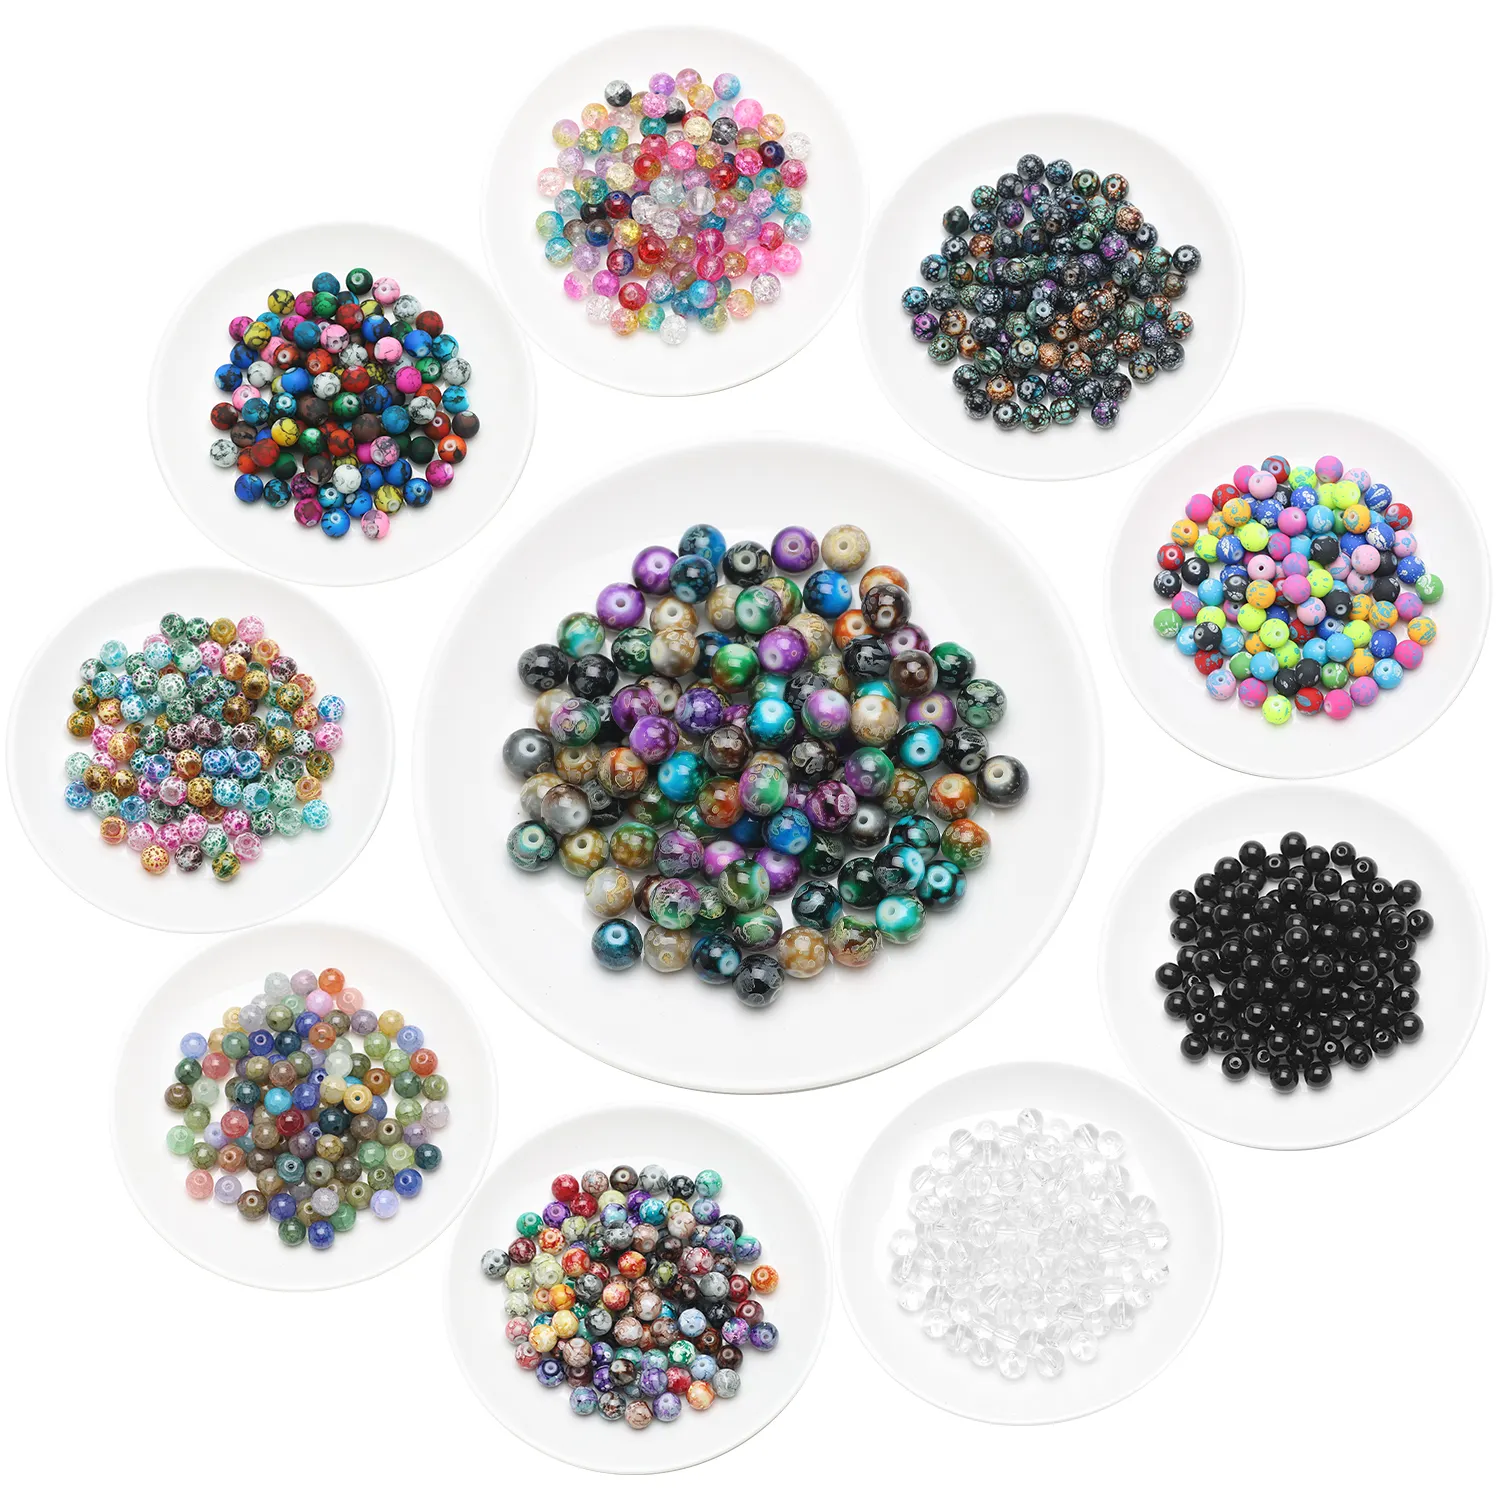 Zhubi - Pulseira de contas de vidro redondas para fazer joias, pulseiras DIY artesanais, com padrões de cores e mistura de cristais, 8 mm, 100 unidades